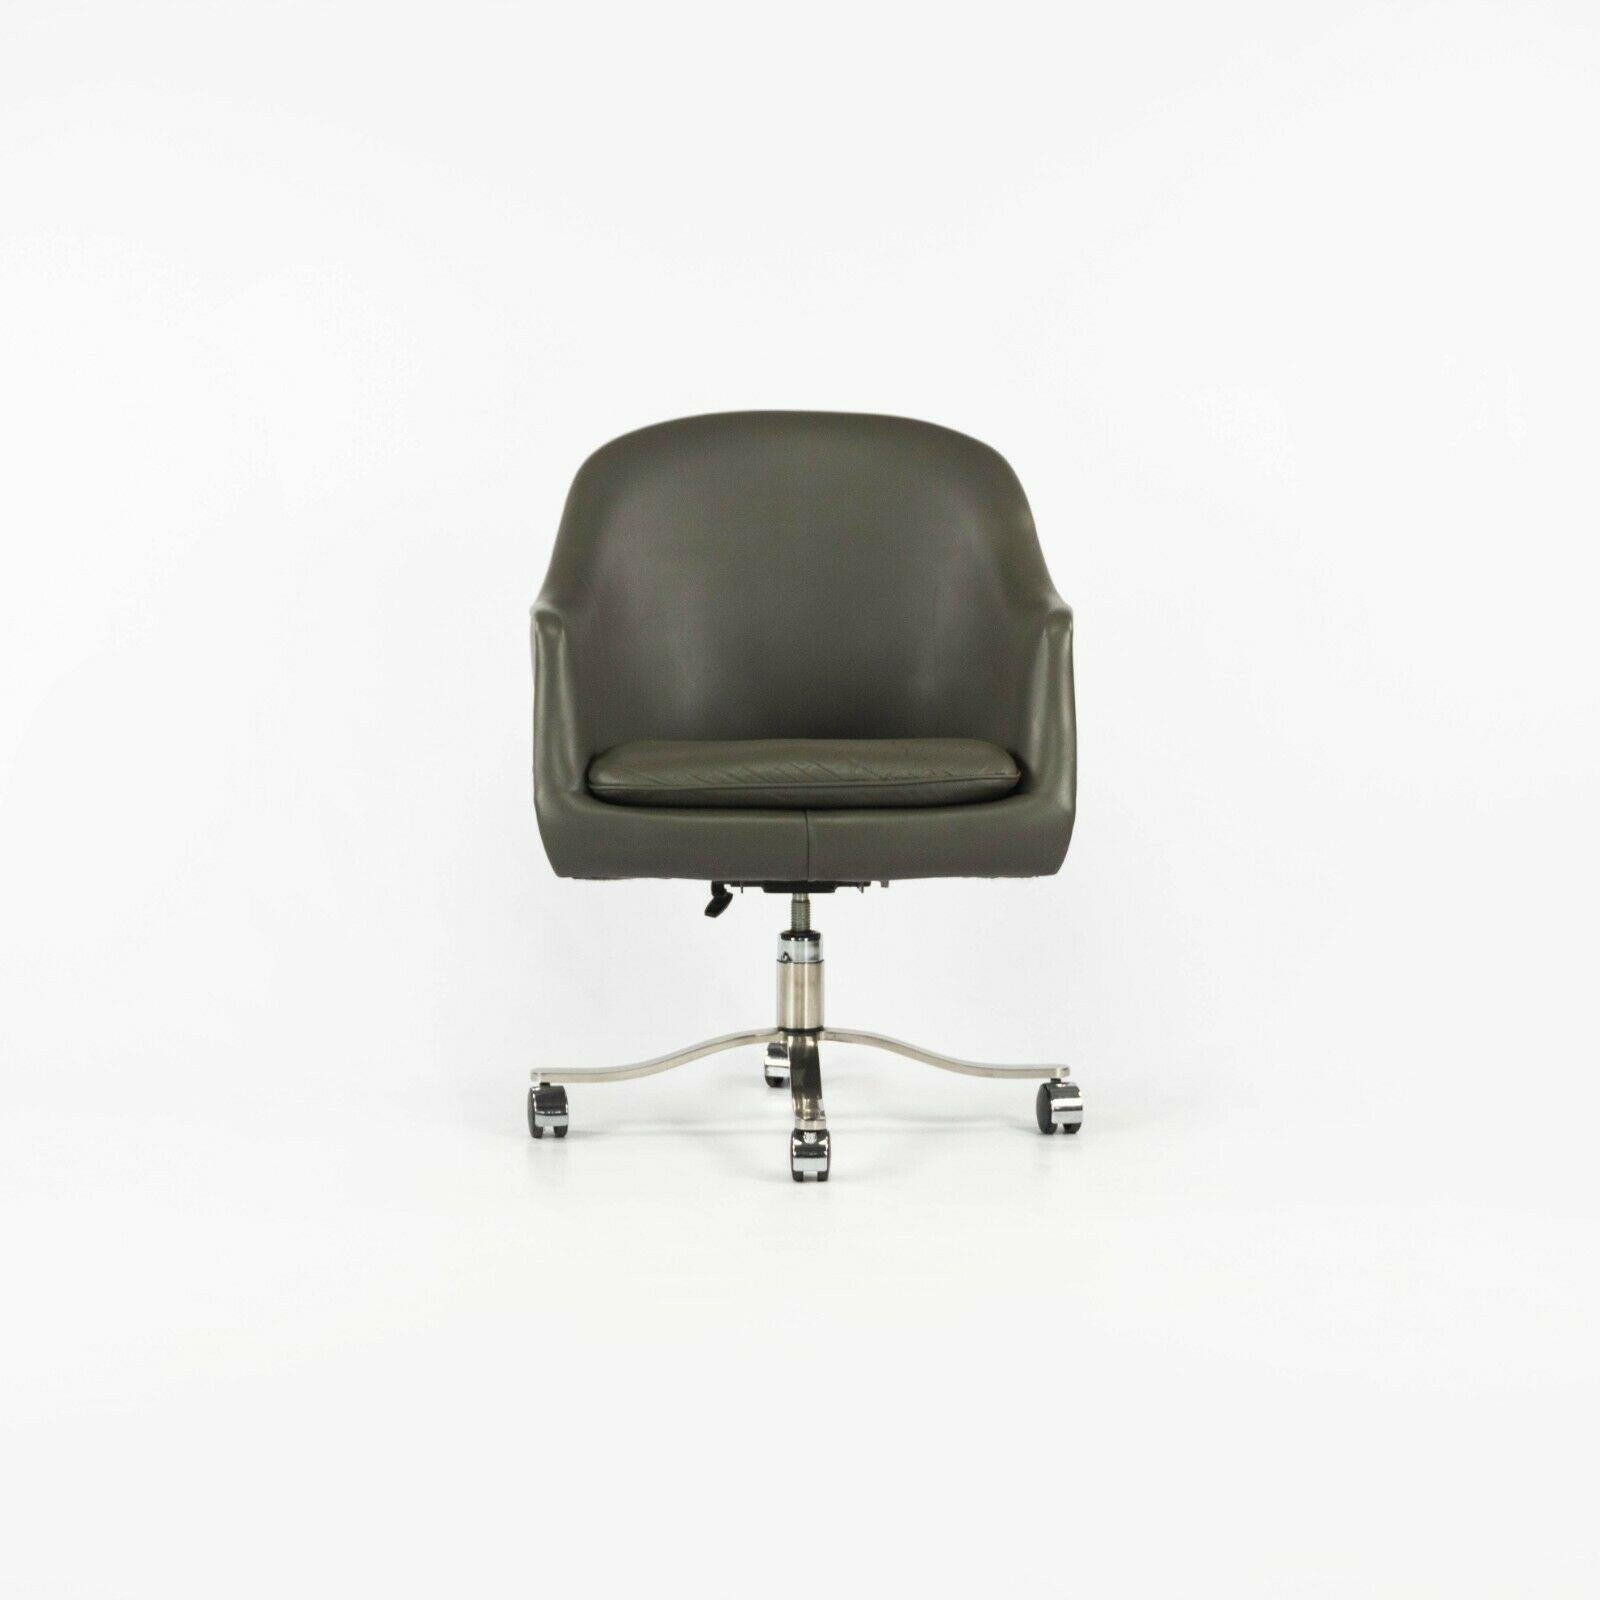 Nous vous proposons à la vente une (le prix indiqué est pour une chaise, mais deux sont disponibles) très rare chaise de bureau à roulettes de Nicos Steele en cuir gris avec des bases alpha en acier inoxydable poli. Les chaises sont en très bon,